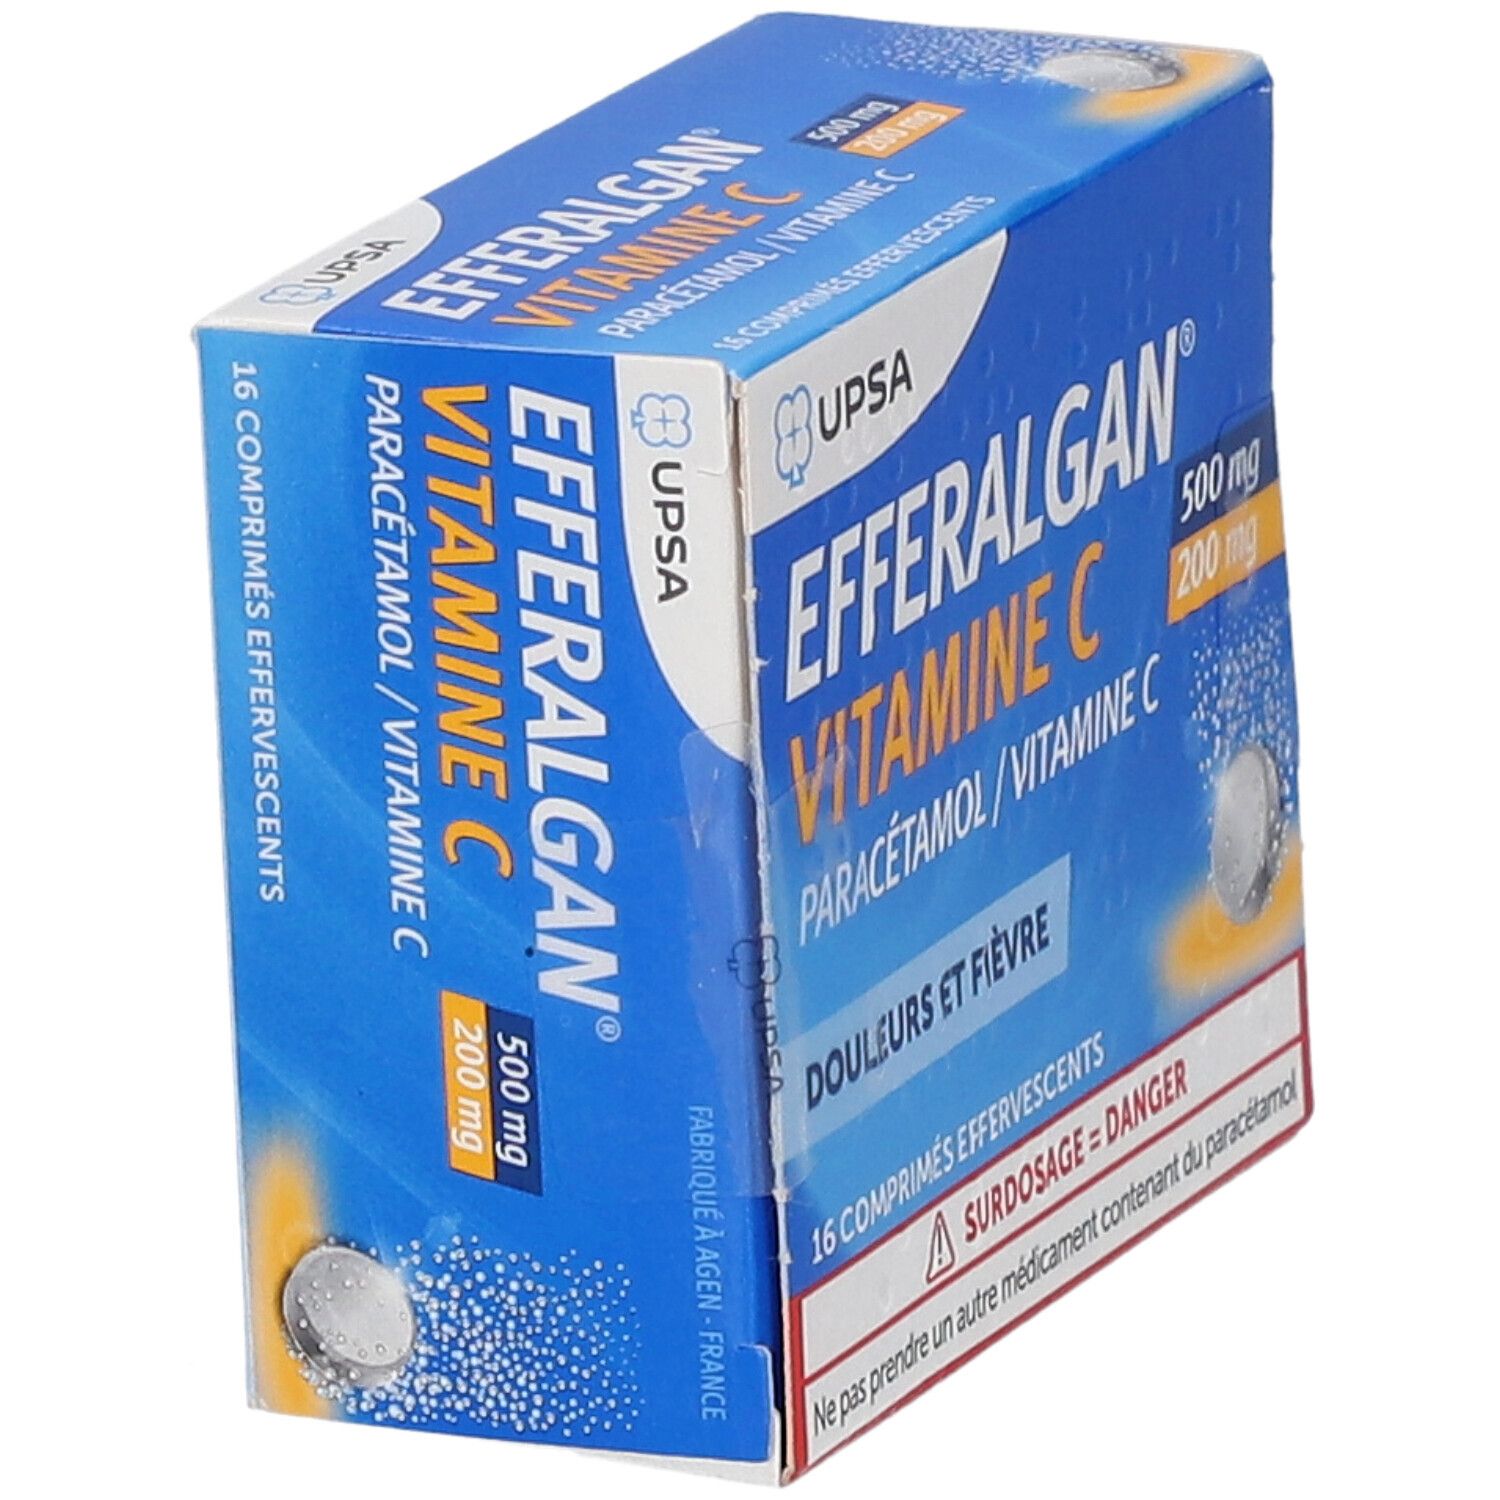 EFFERALGAN Vitamine C - Comprimés Effervescents